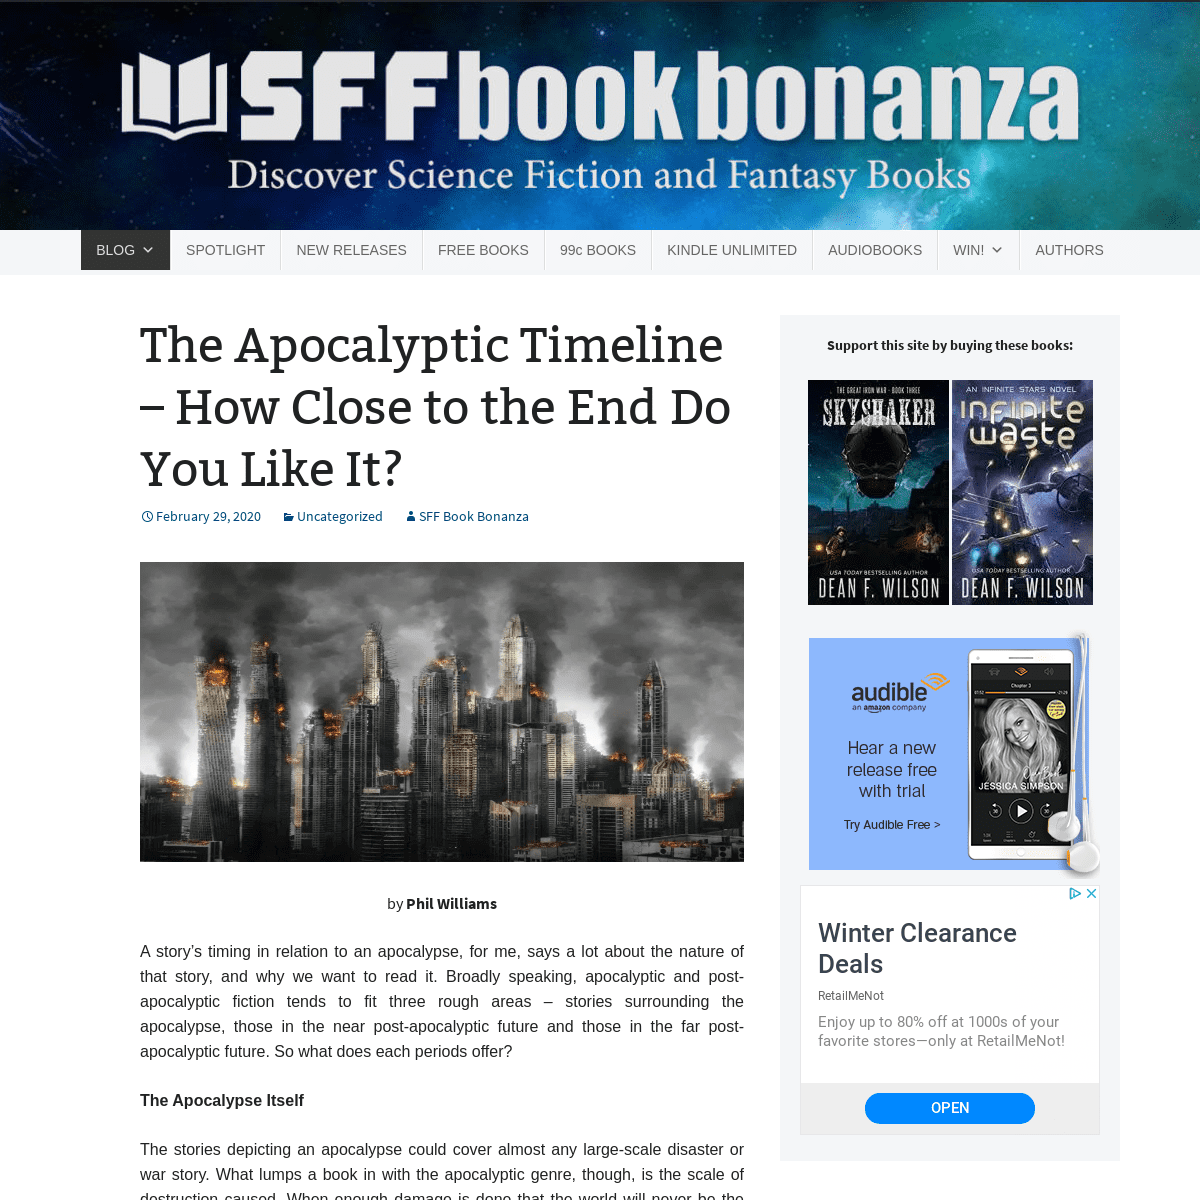 A complete backup of sffbookbonanza.com